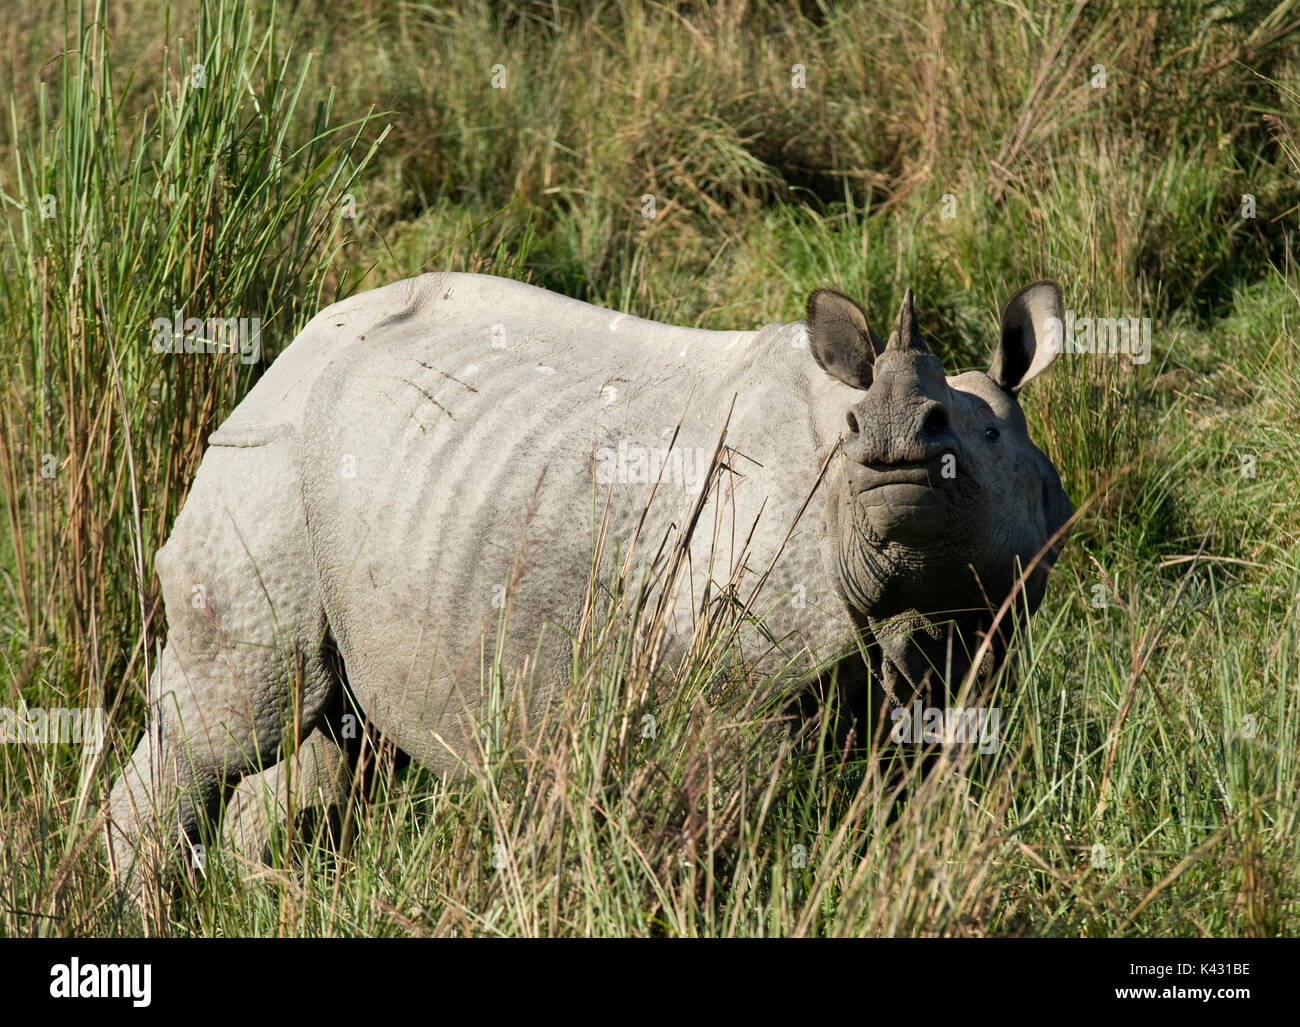 Rhinocéros indien, Rhinoceros unicornis, dans l'herbe haute, le parc national de Kaziranga, Assam, Inde, patrimoine mondial et l'UICN UICN Catégorie II Site, 2004 Disparition Banque D'Images